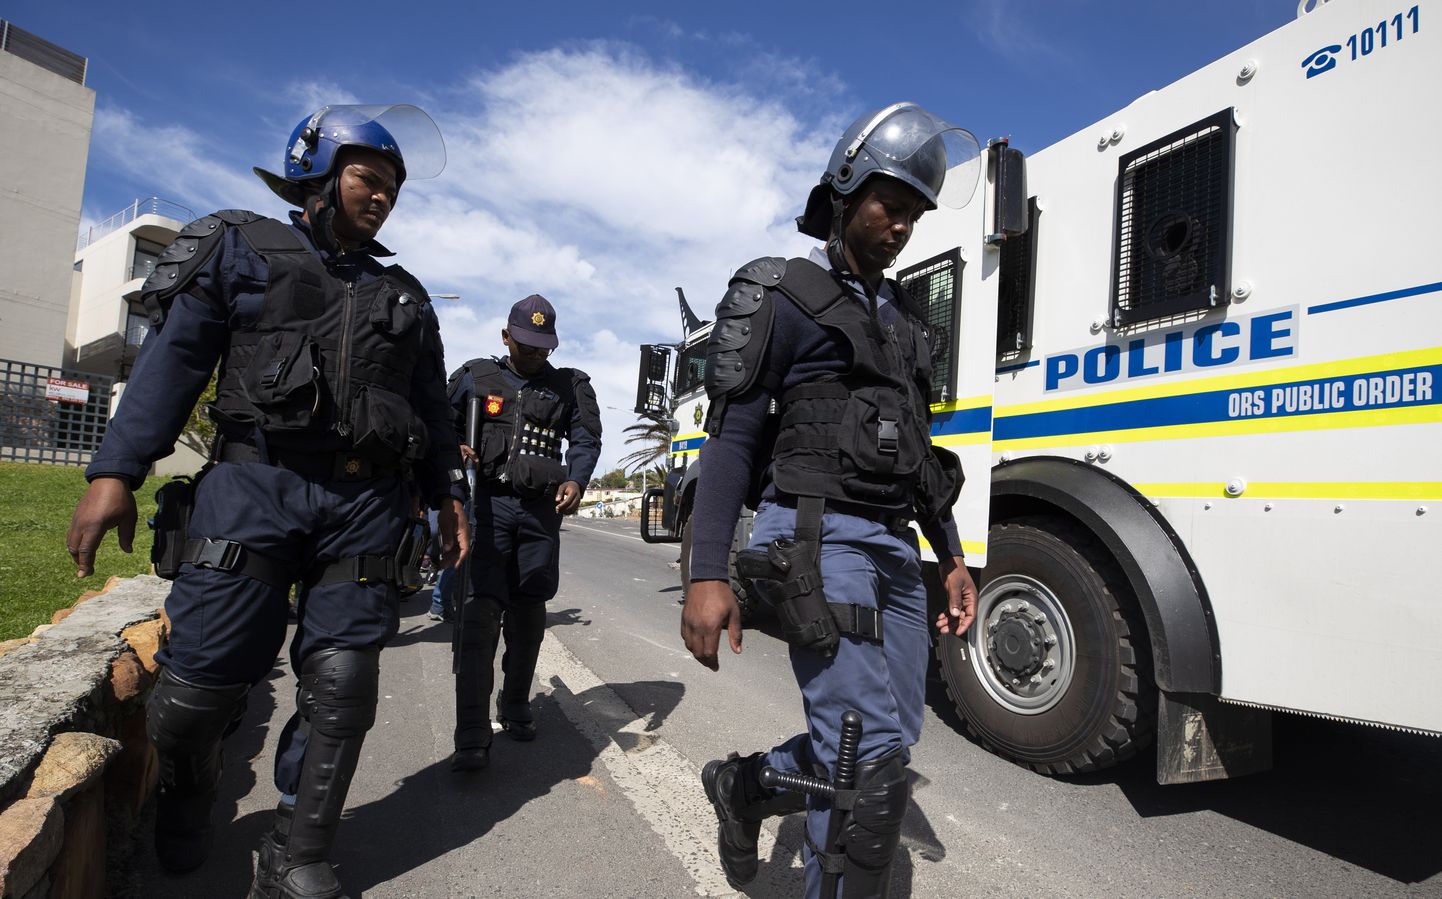 Lõuna-Aafrika Vabariigis on mõrvade arv kasvanud kuus aastat järjest.